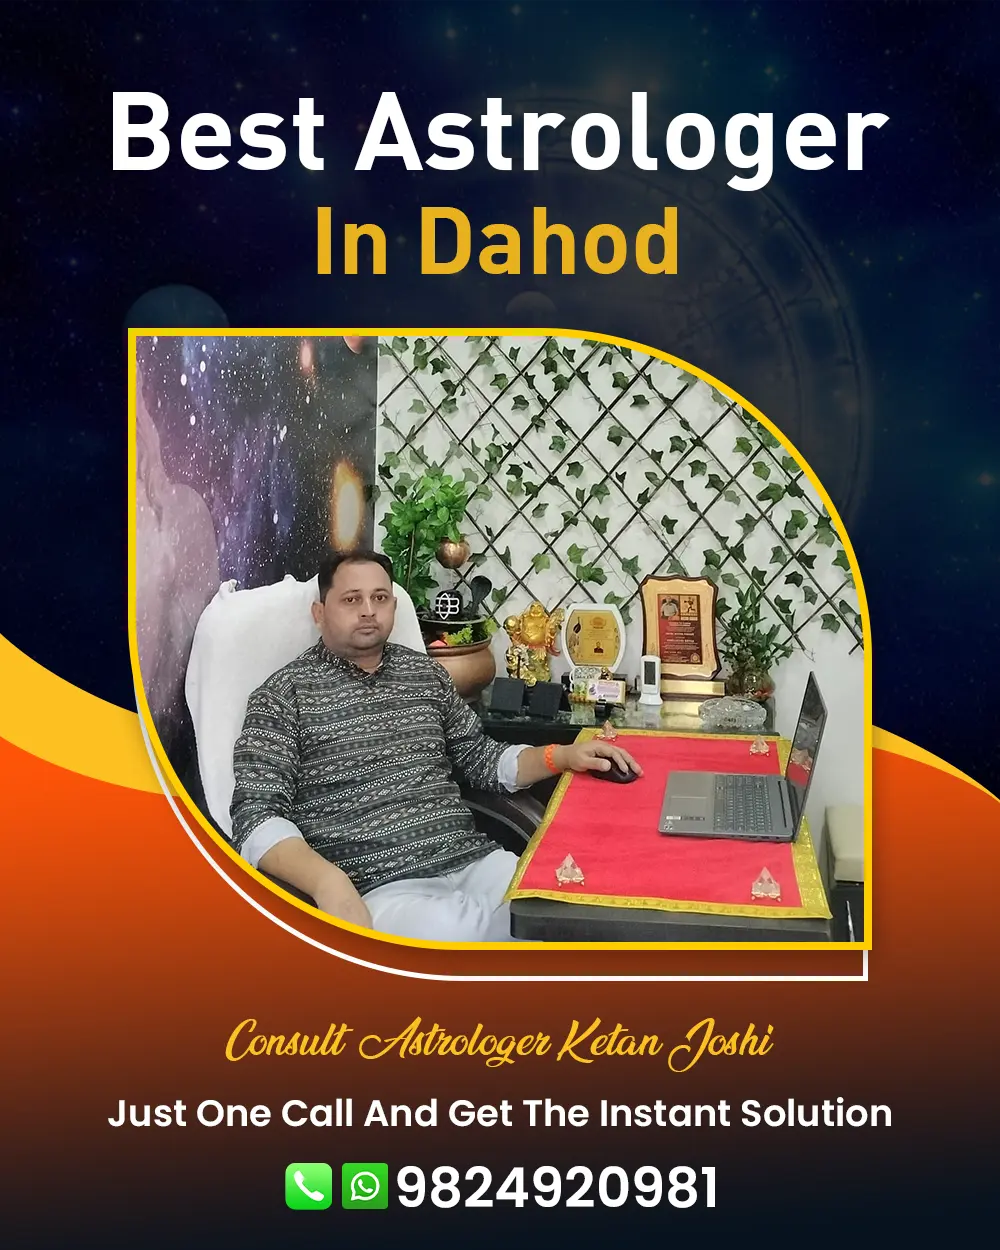 Best Astrologer In Dahod